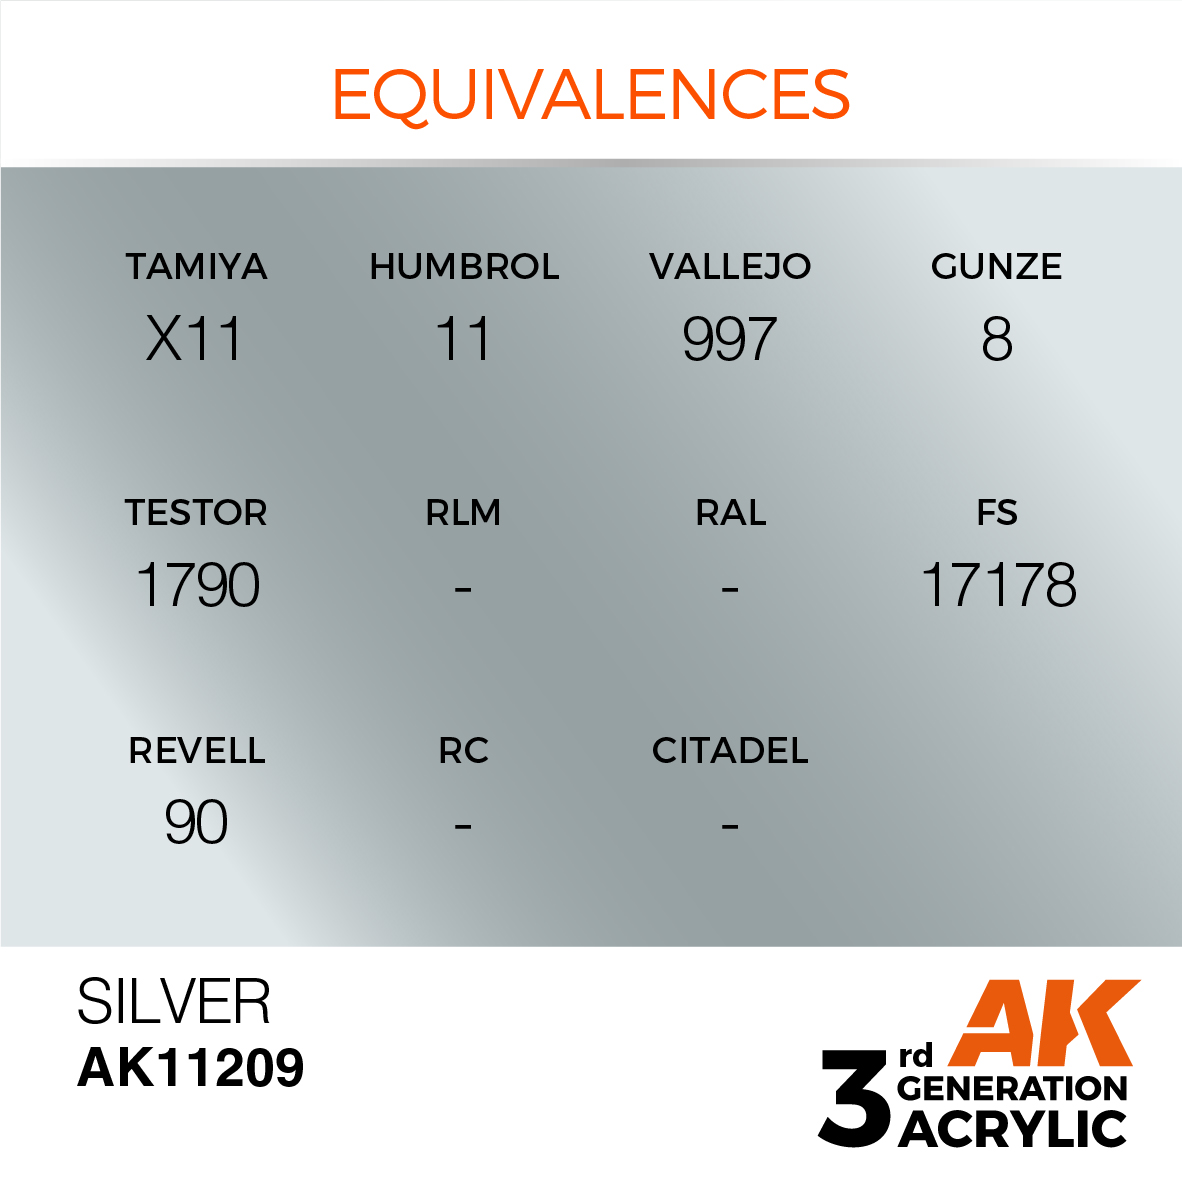 AK11209 Silver (3rd-Generation) (17mL)